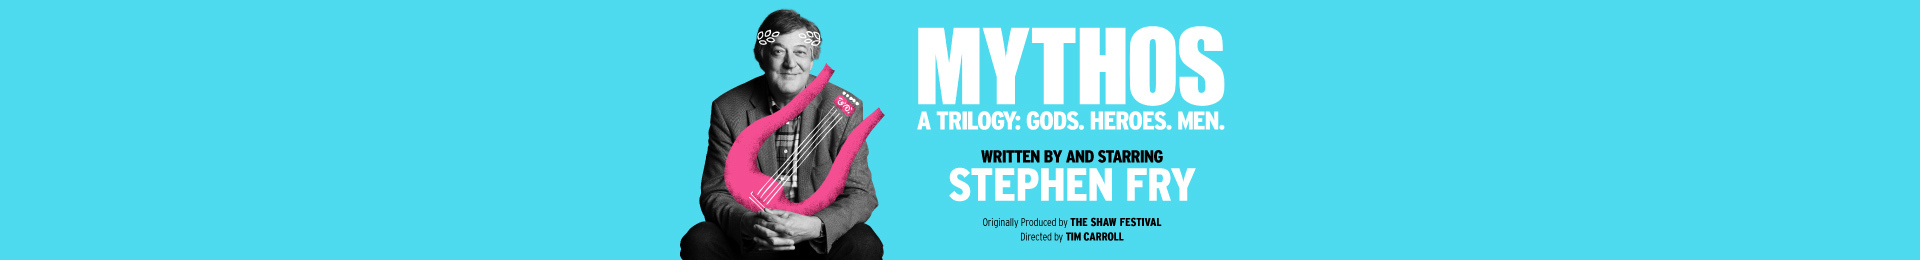 Stephen Fry Mythos a Trilogy: Men banner image